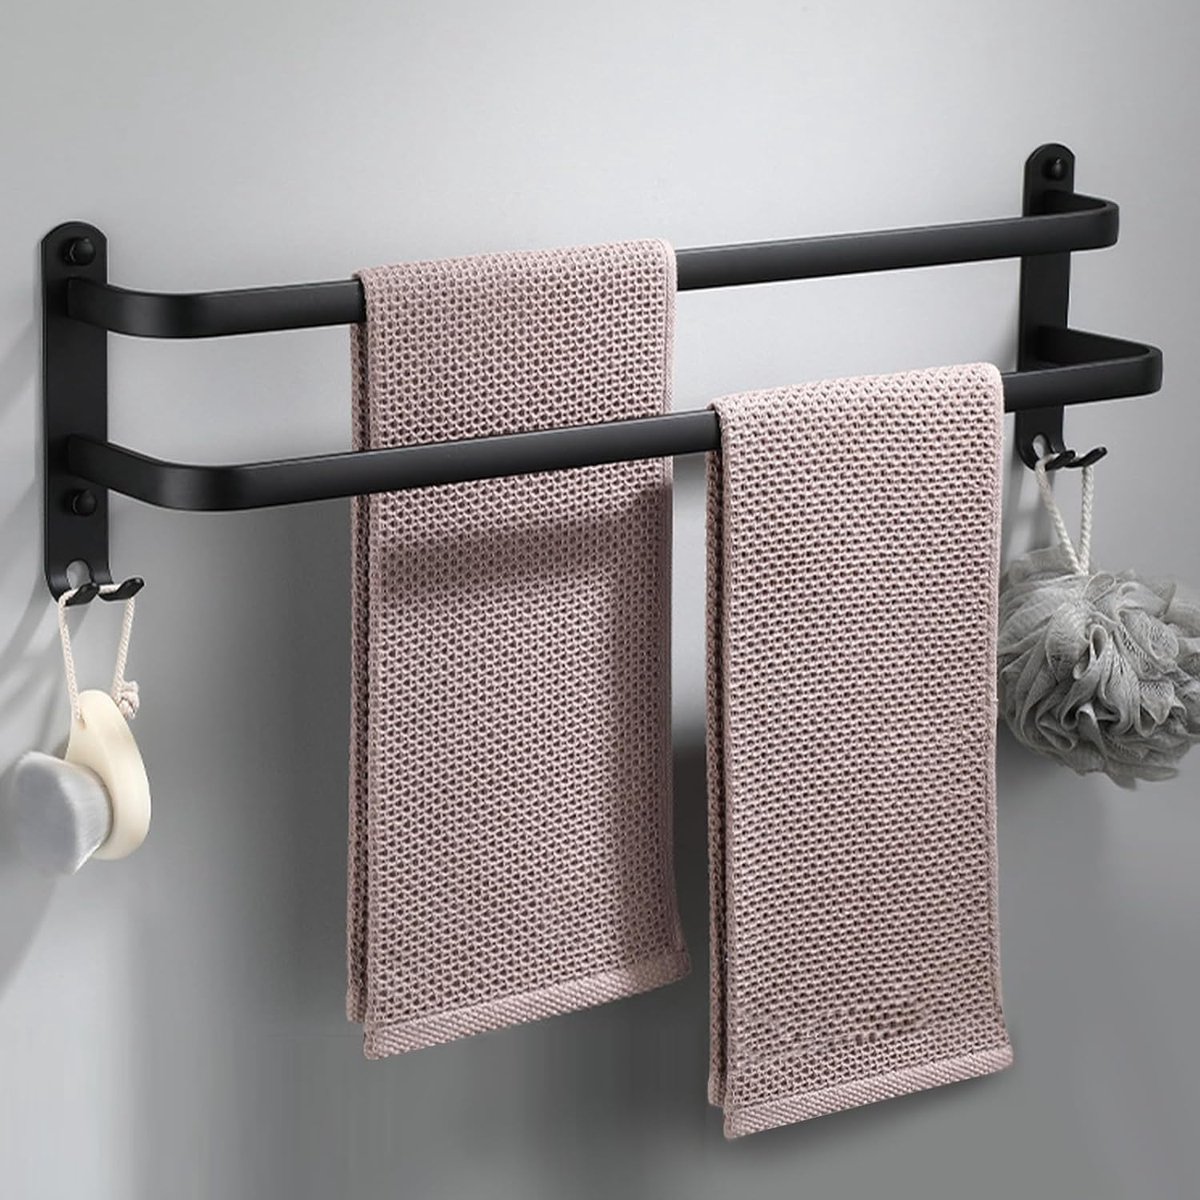 Handdoekhouder dubbel 40 cm - Zonder boren wandmontage - Voor de badkamer, keuken, kamer - Mat zwart